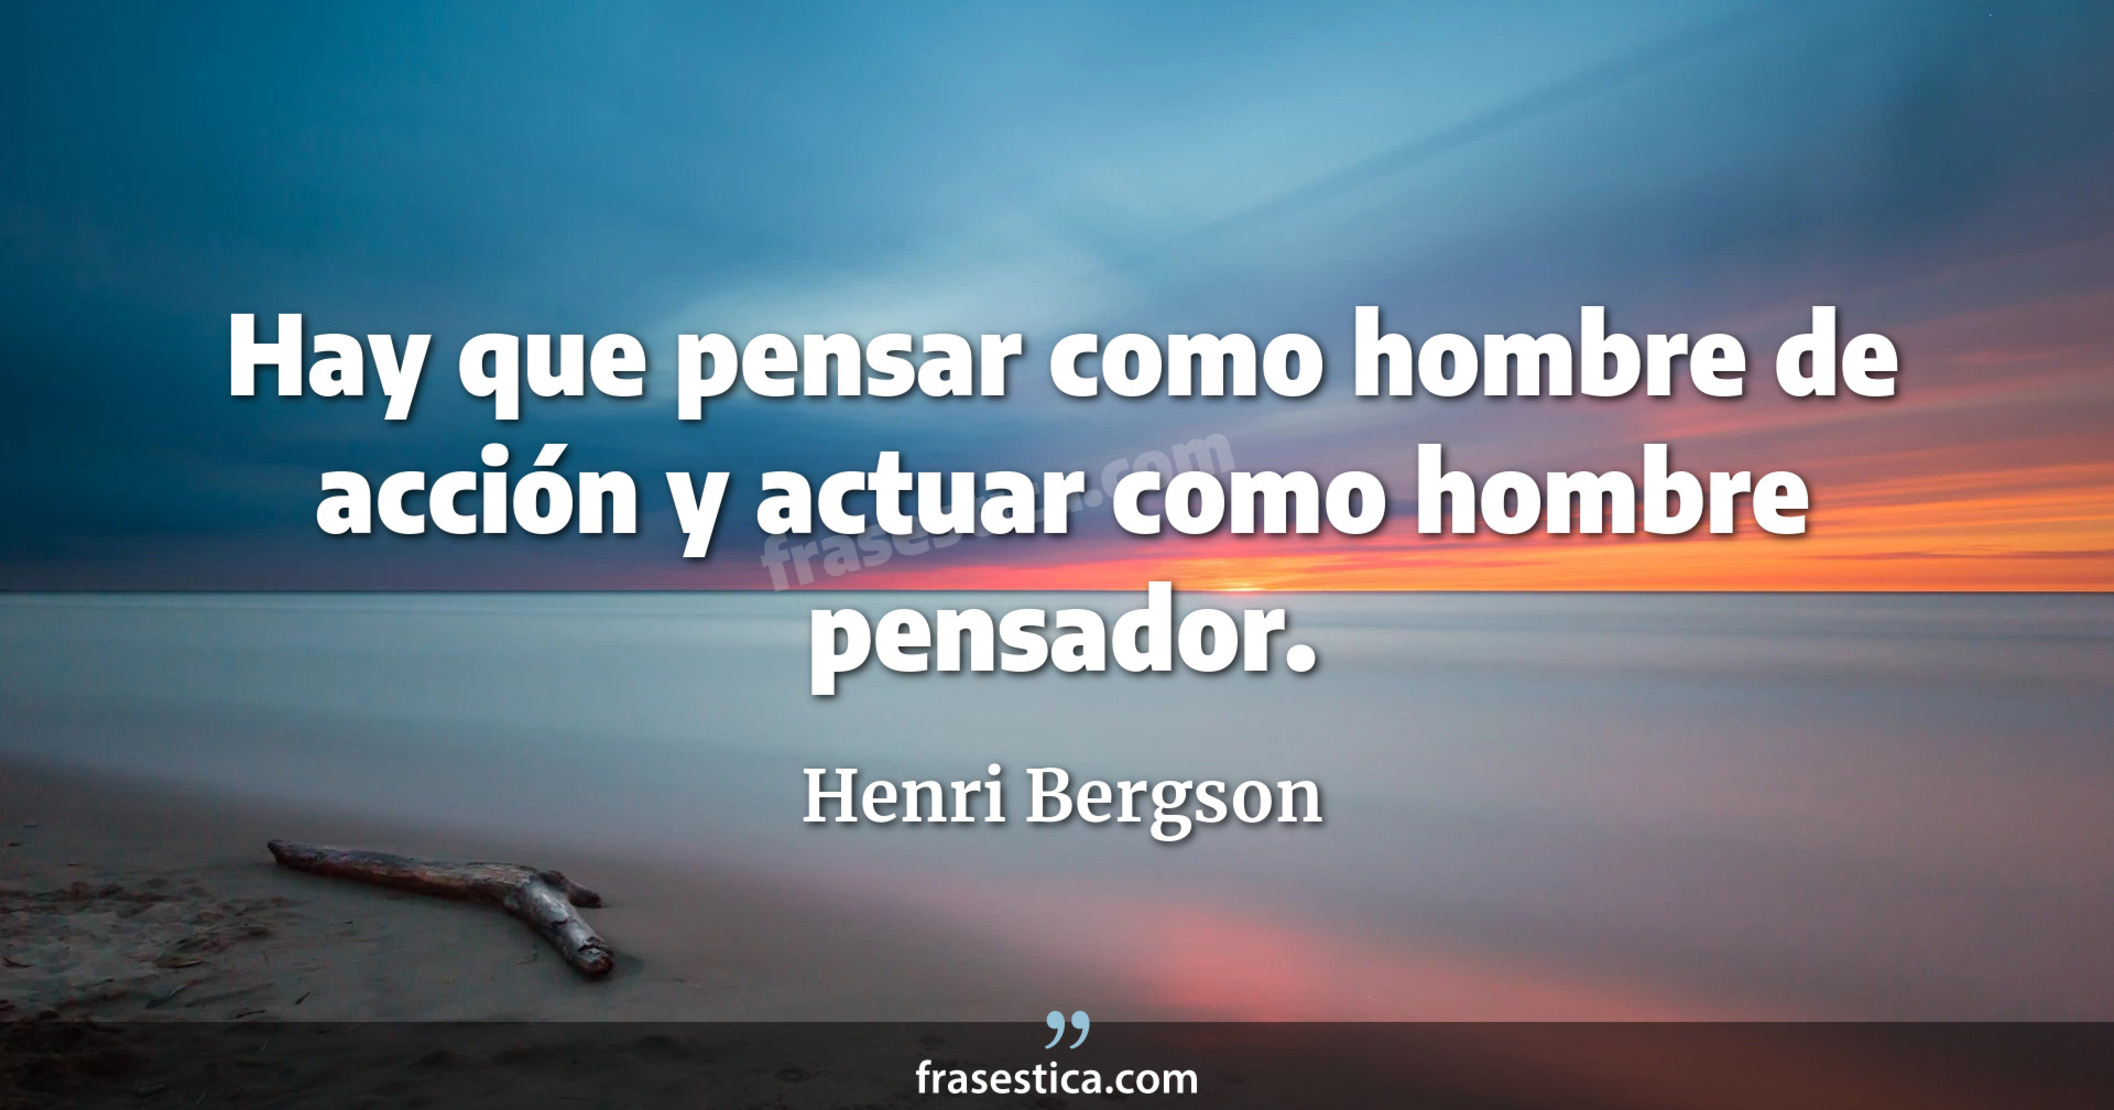 Hay que pensar como hombre de acción y actuar como hombre pensador. - Henri Bergson